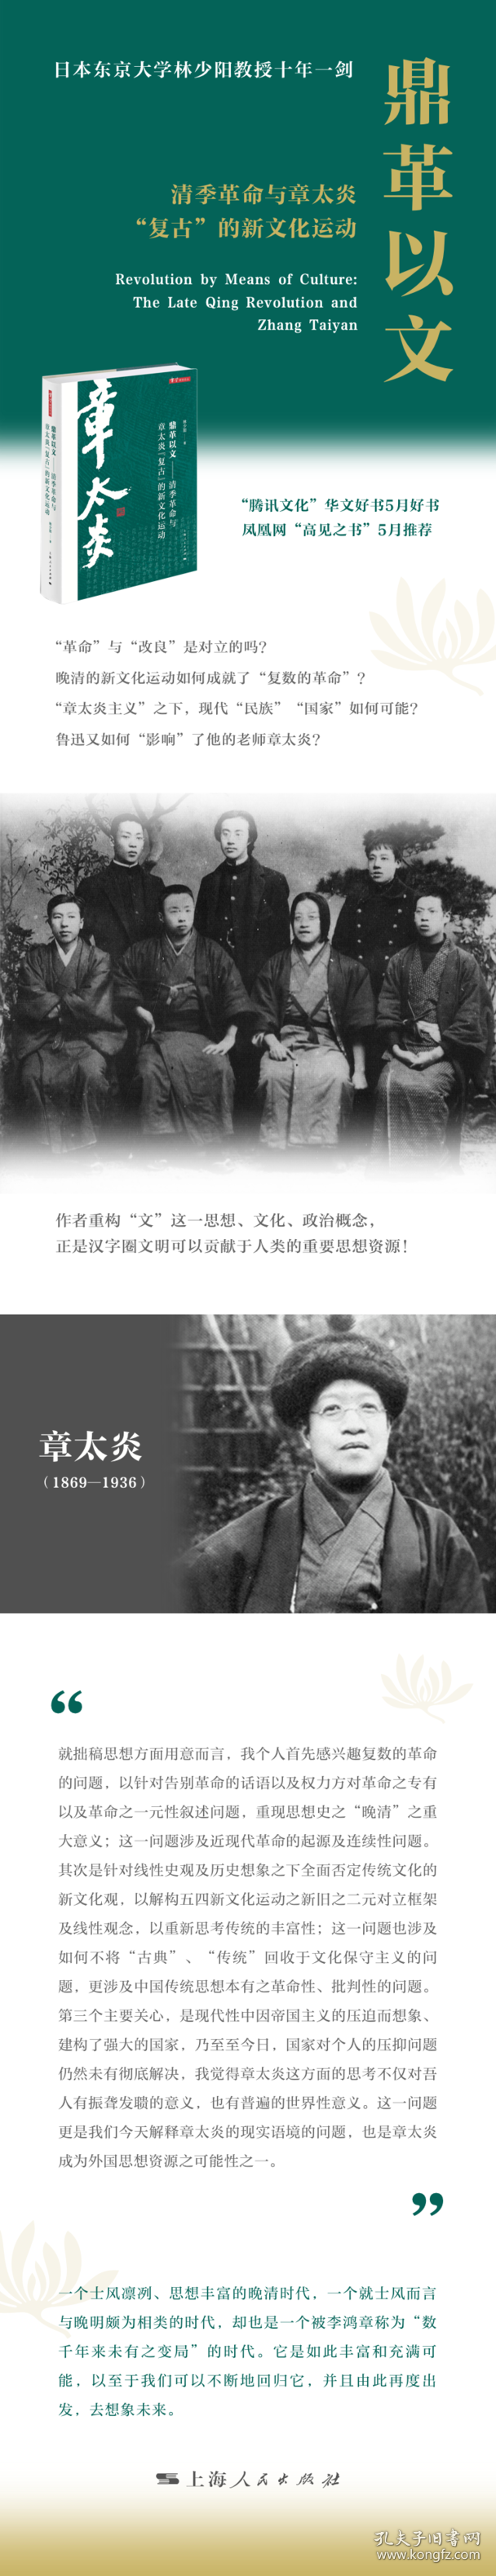 鼎革以文:清季革命与章太炎“复古”的新文化运动:the late Qing revolution and Zhang Taiyan from 1900 to 1911